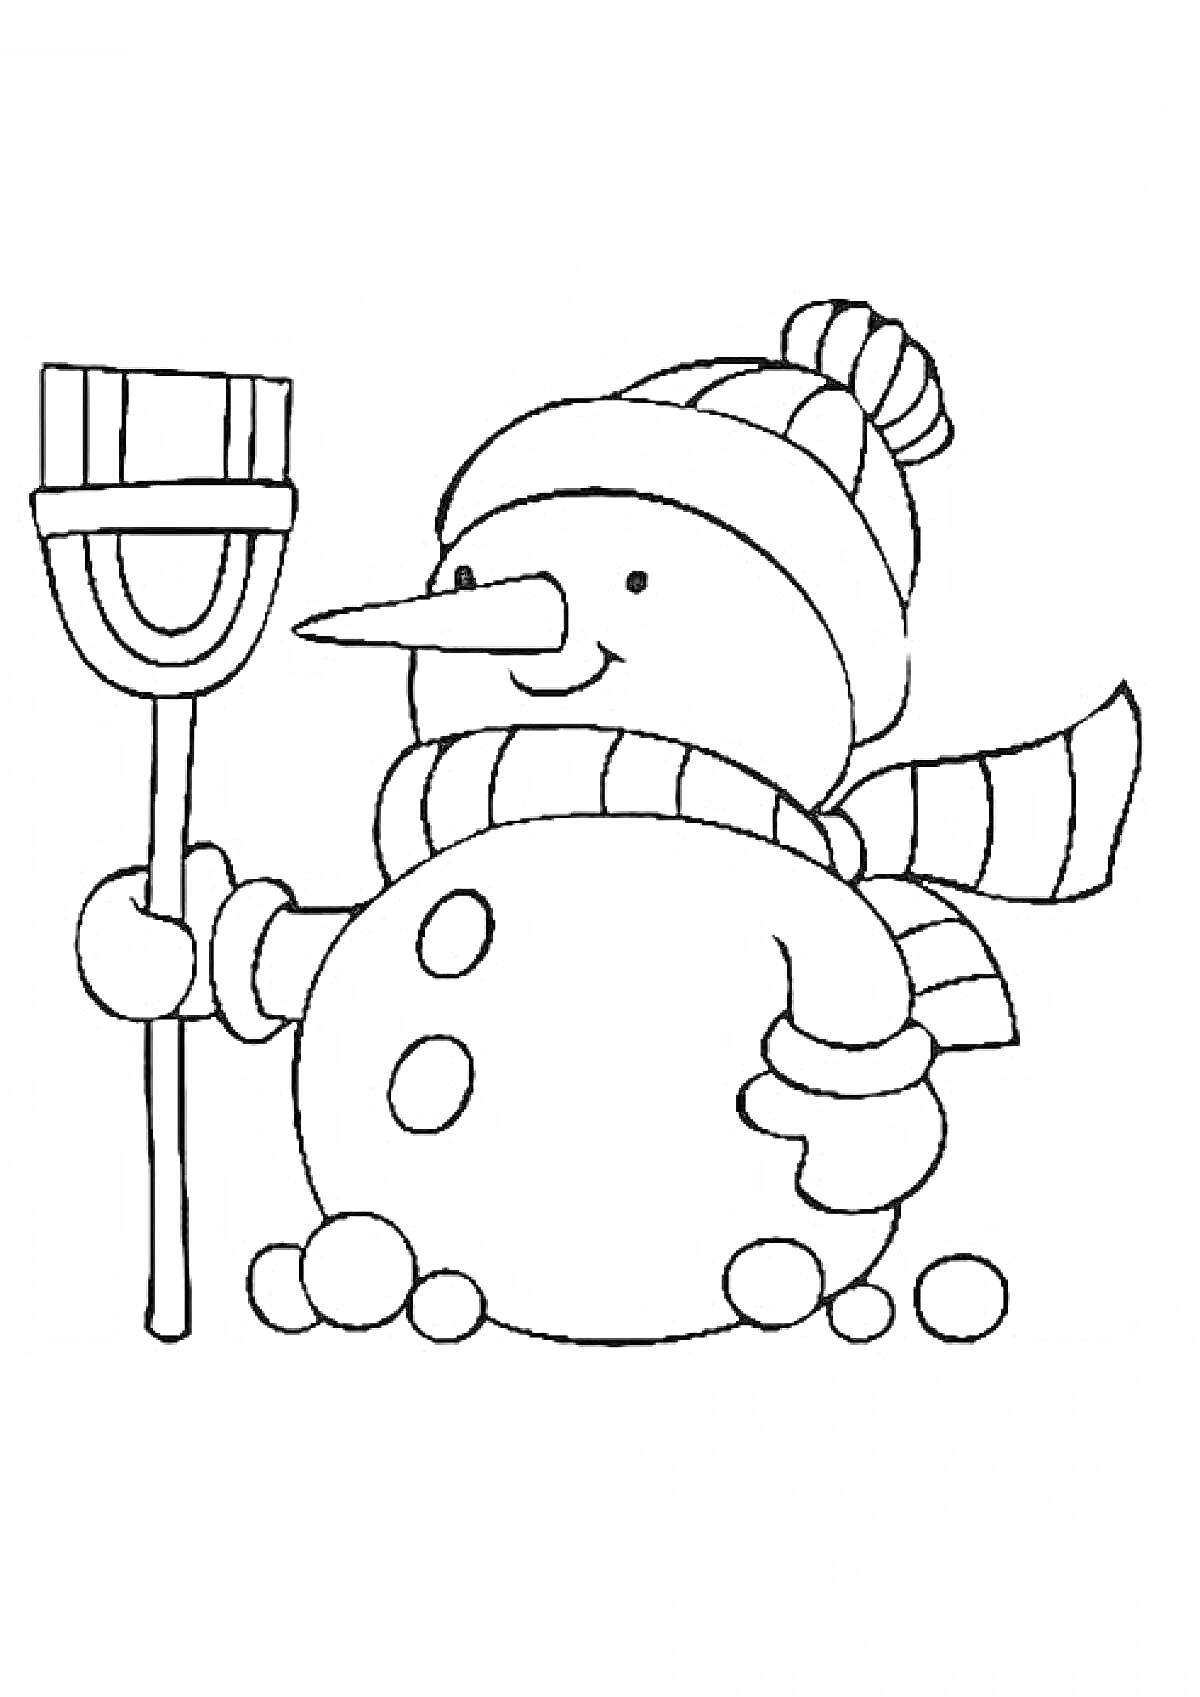 Раскраска Снеговик с метлой, шарфом и шапкой, окружённый снежками